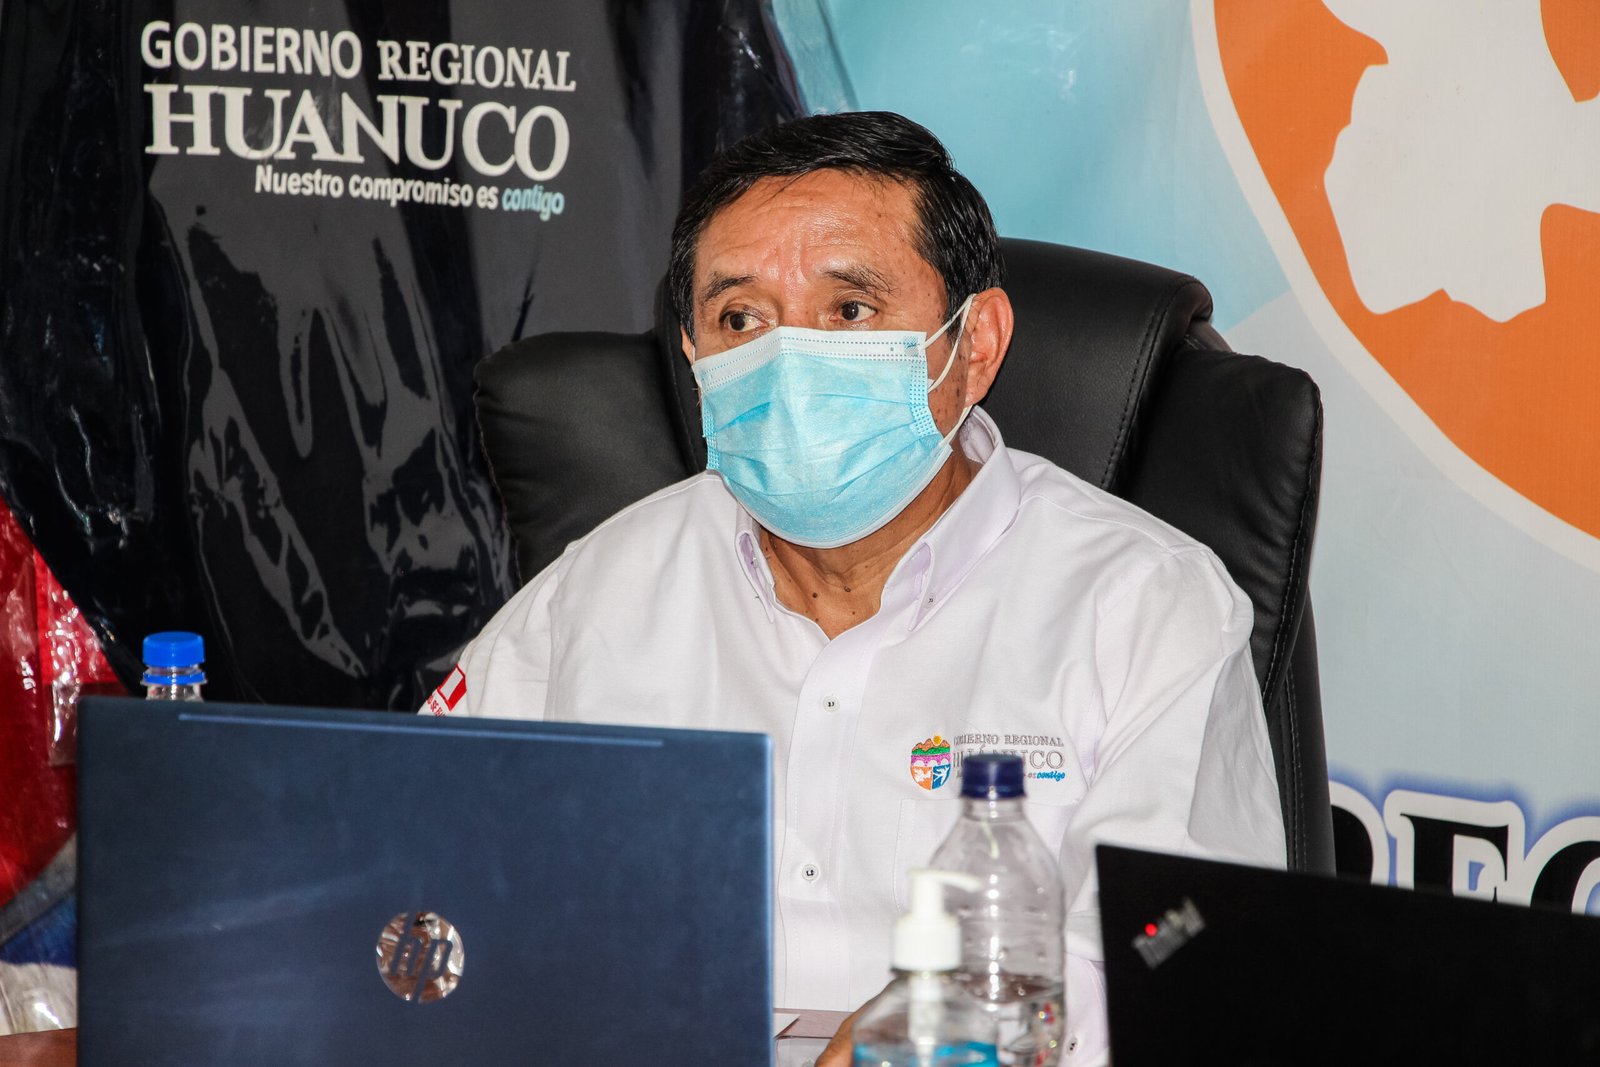 Aparece otro audio que compromete al gobernador regional Erasmo Fernández